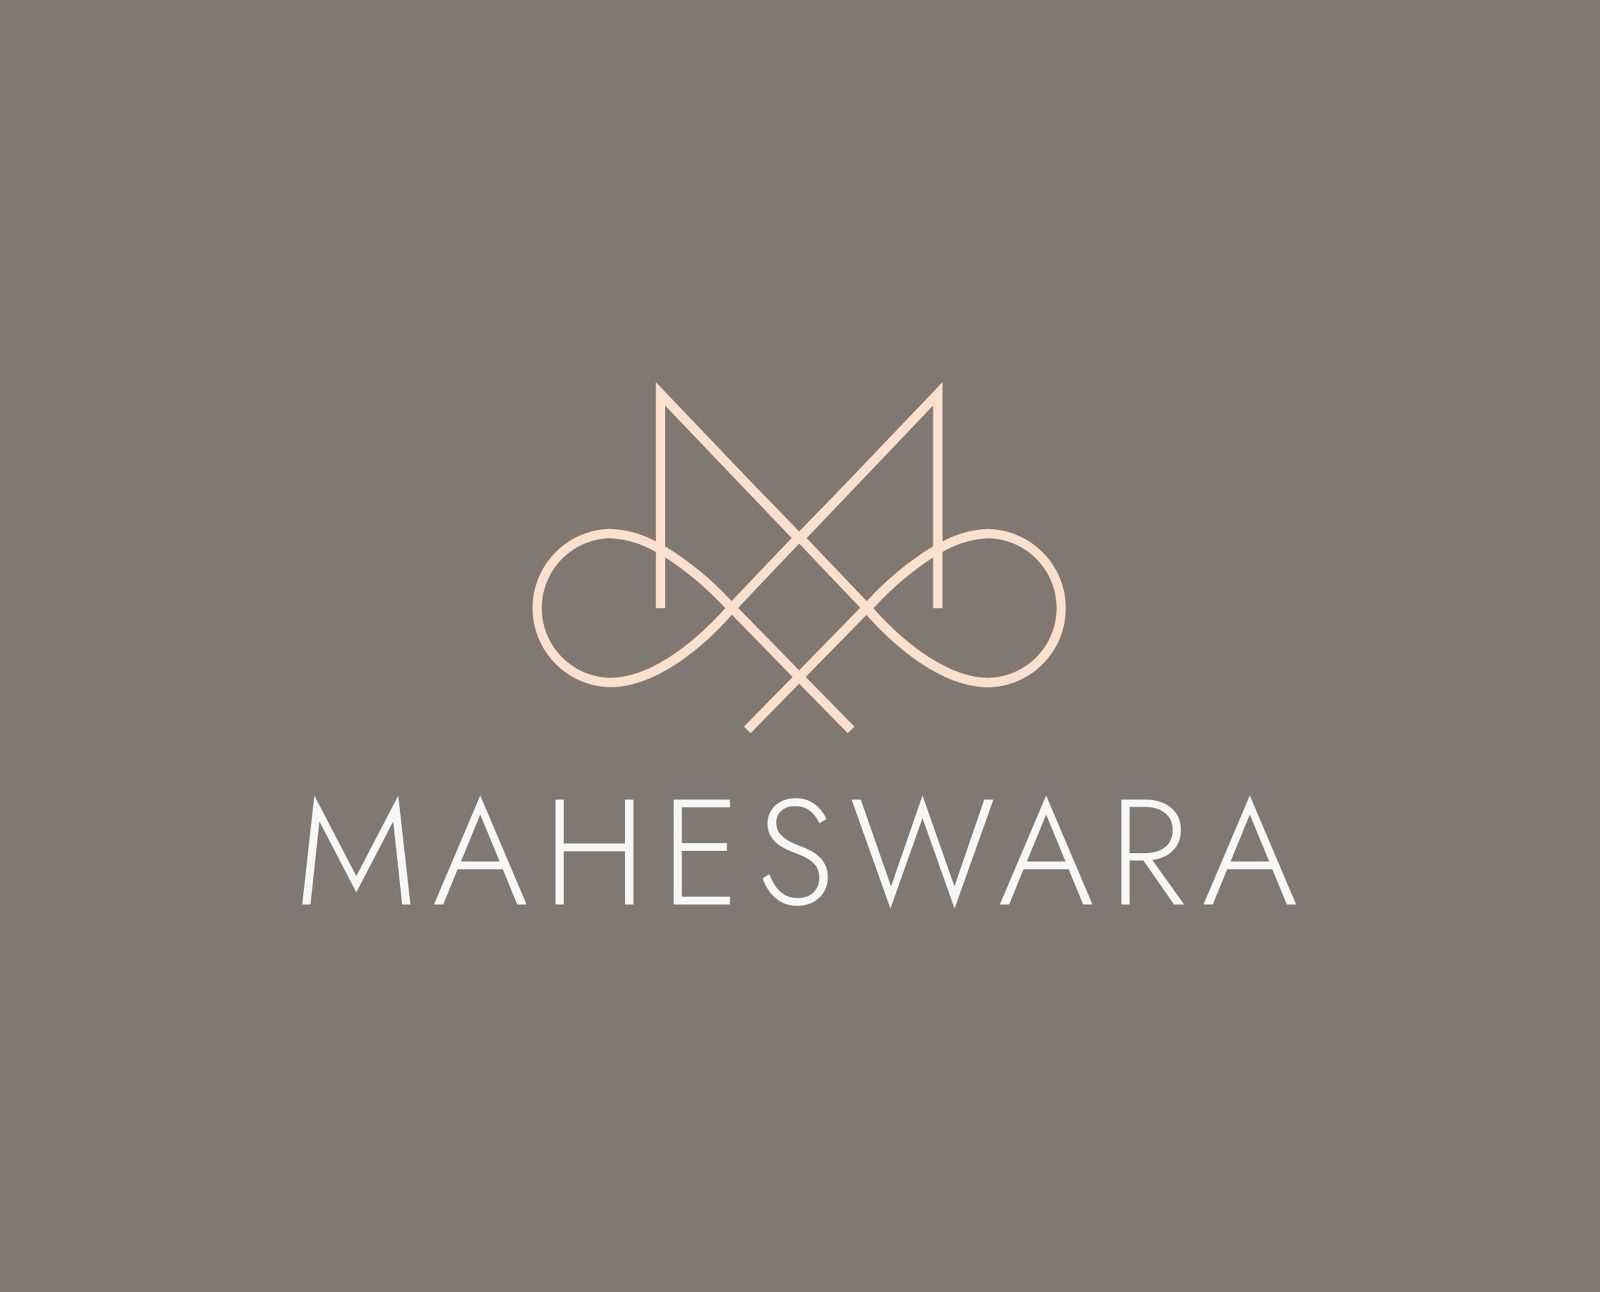 Maheswara Hospitality Management